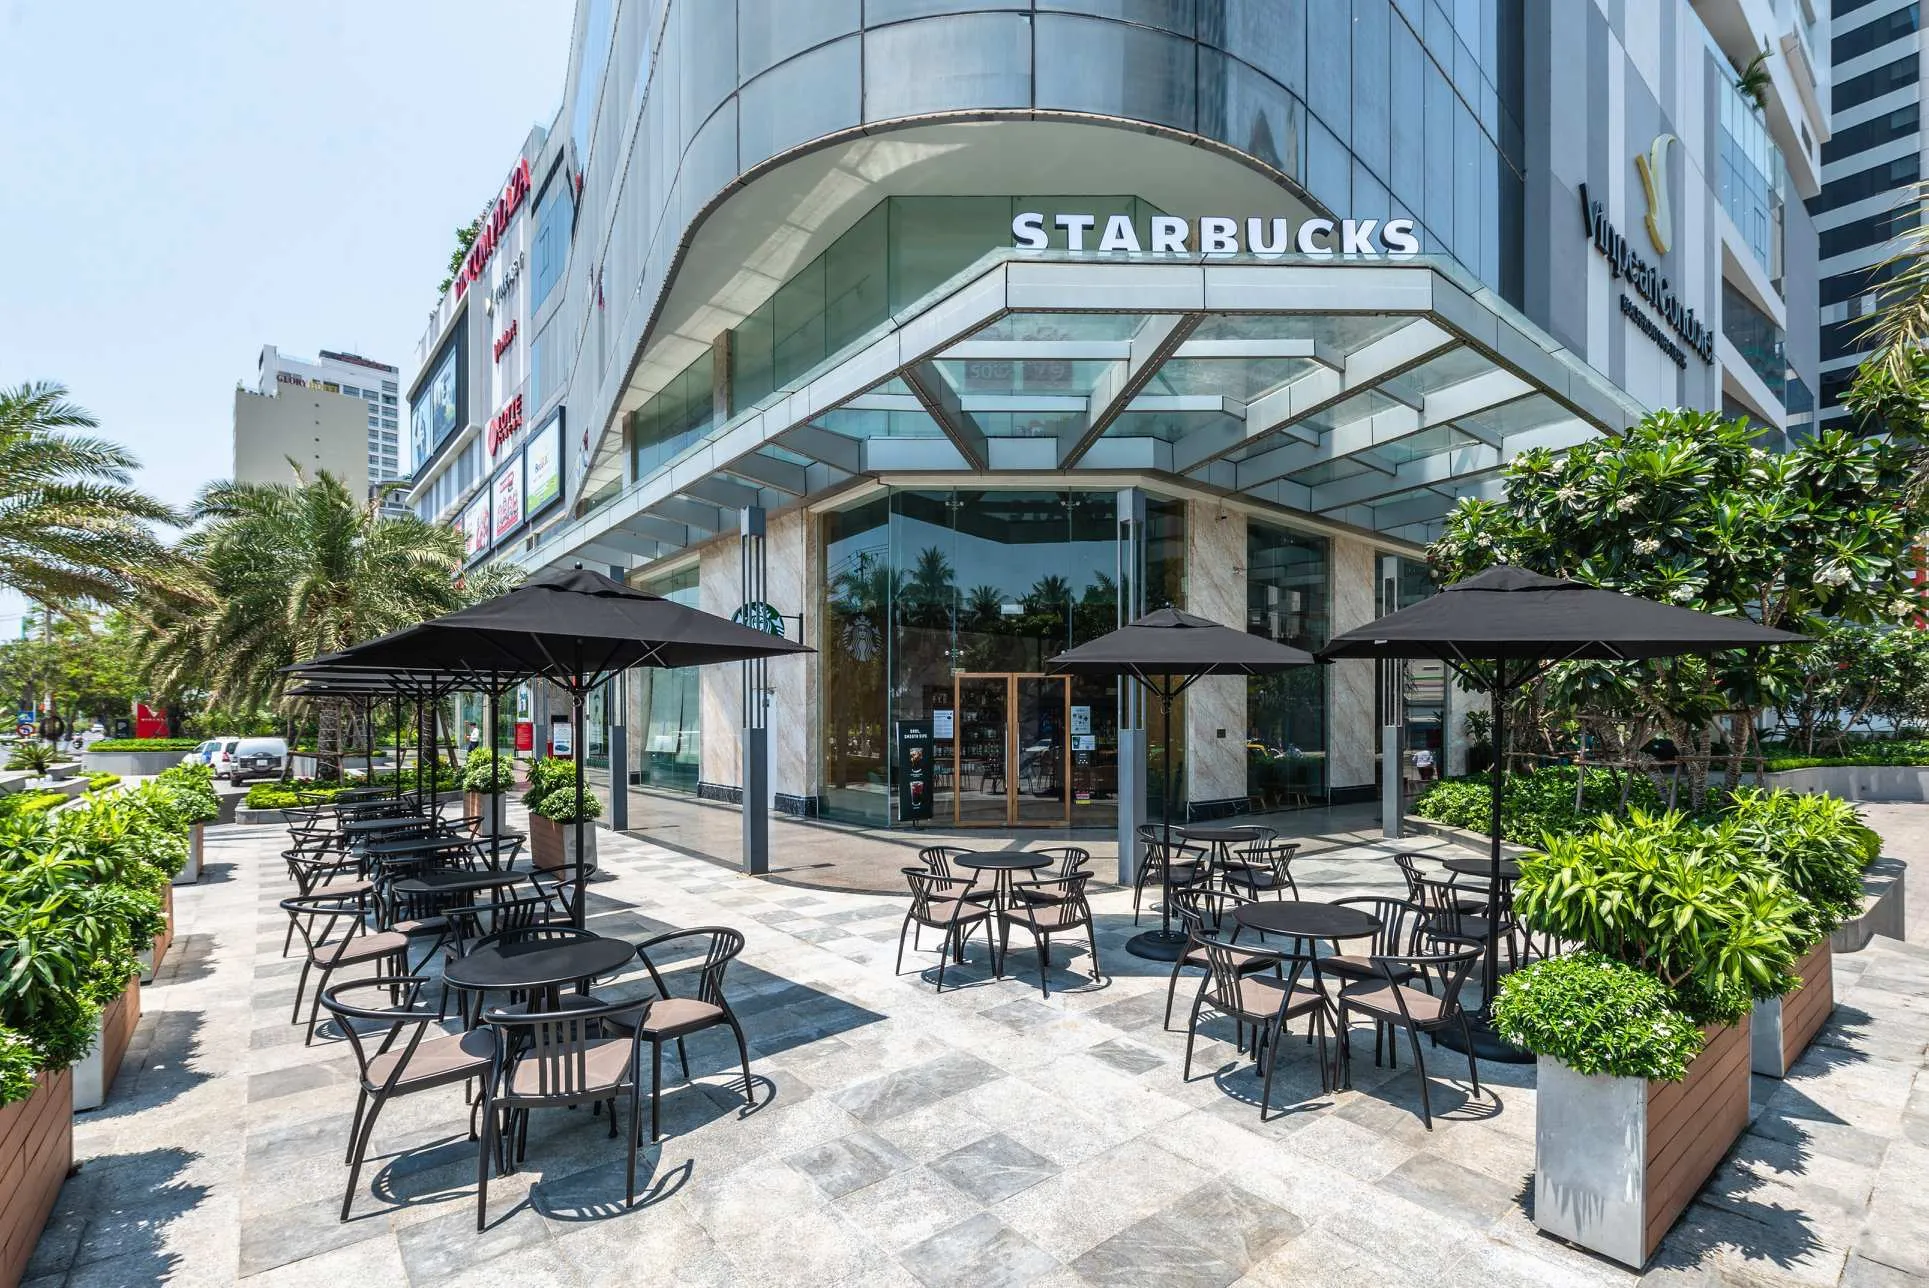 Starbuck luôn có vị trí cửa hàng ở địa điểm đẹp